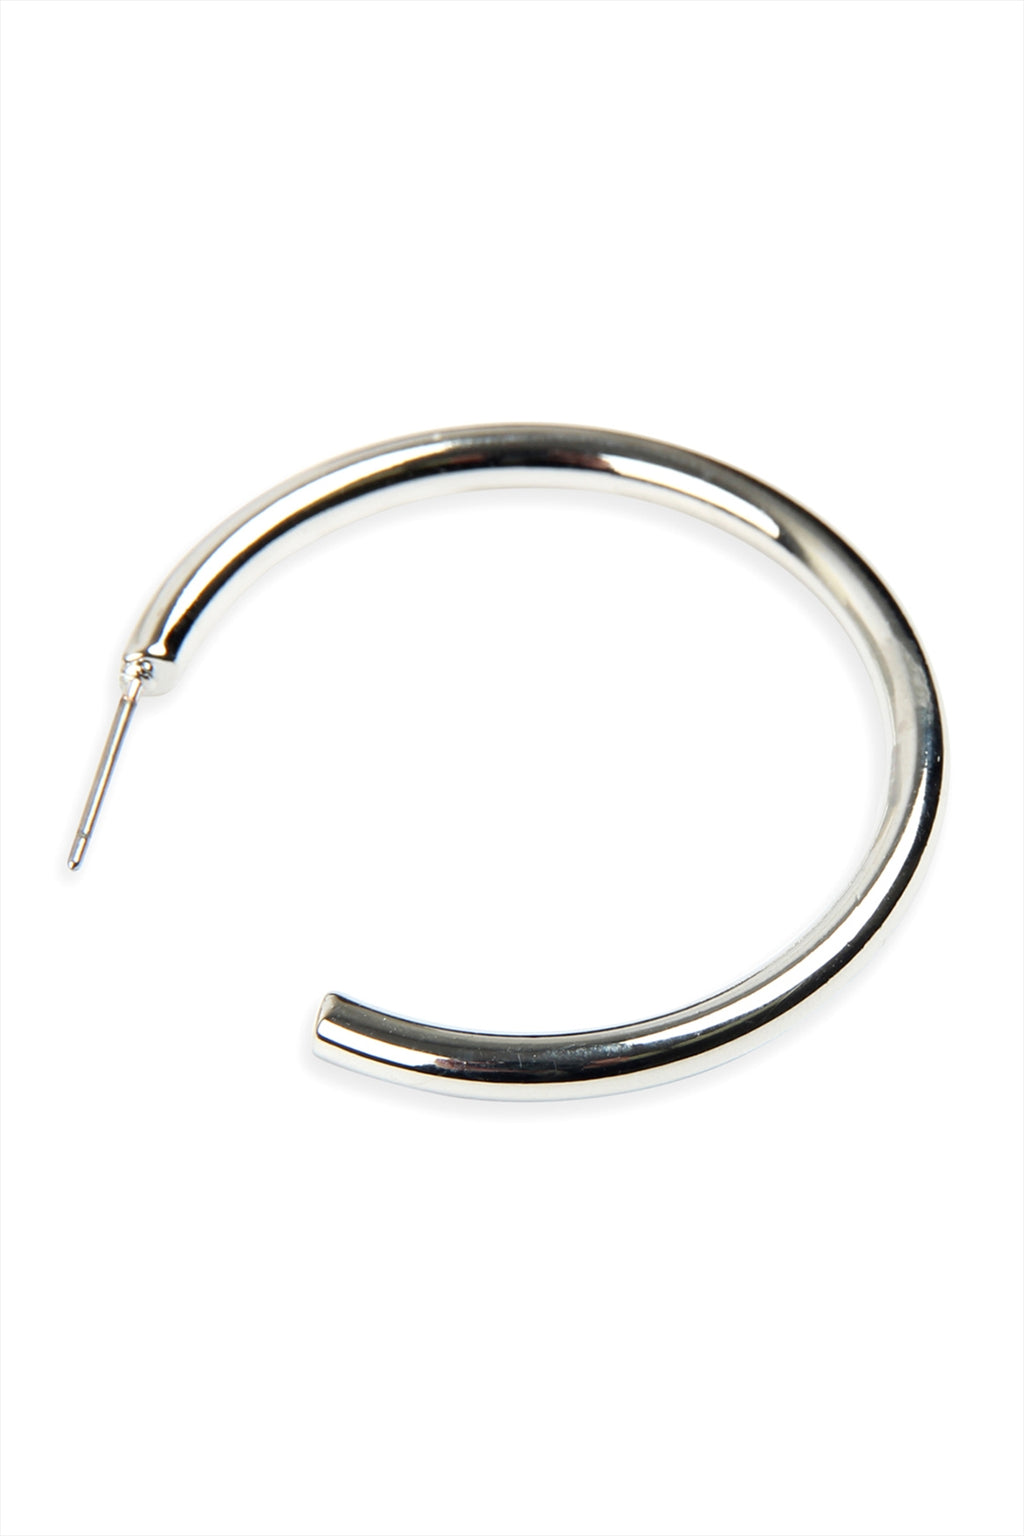 1.5 Inches Post Hoop Earrings Rhodium - Pack of 6